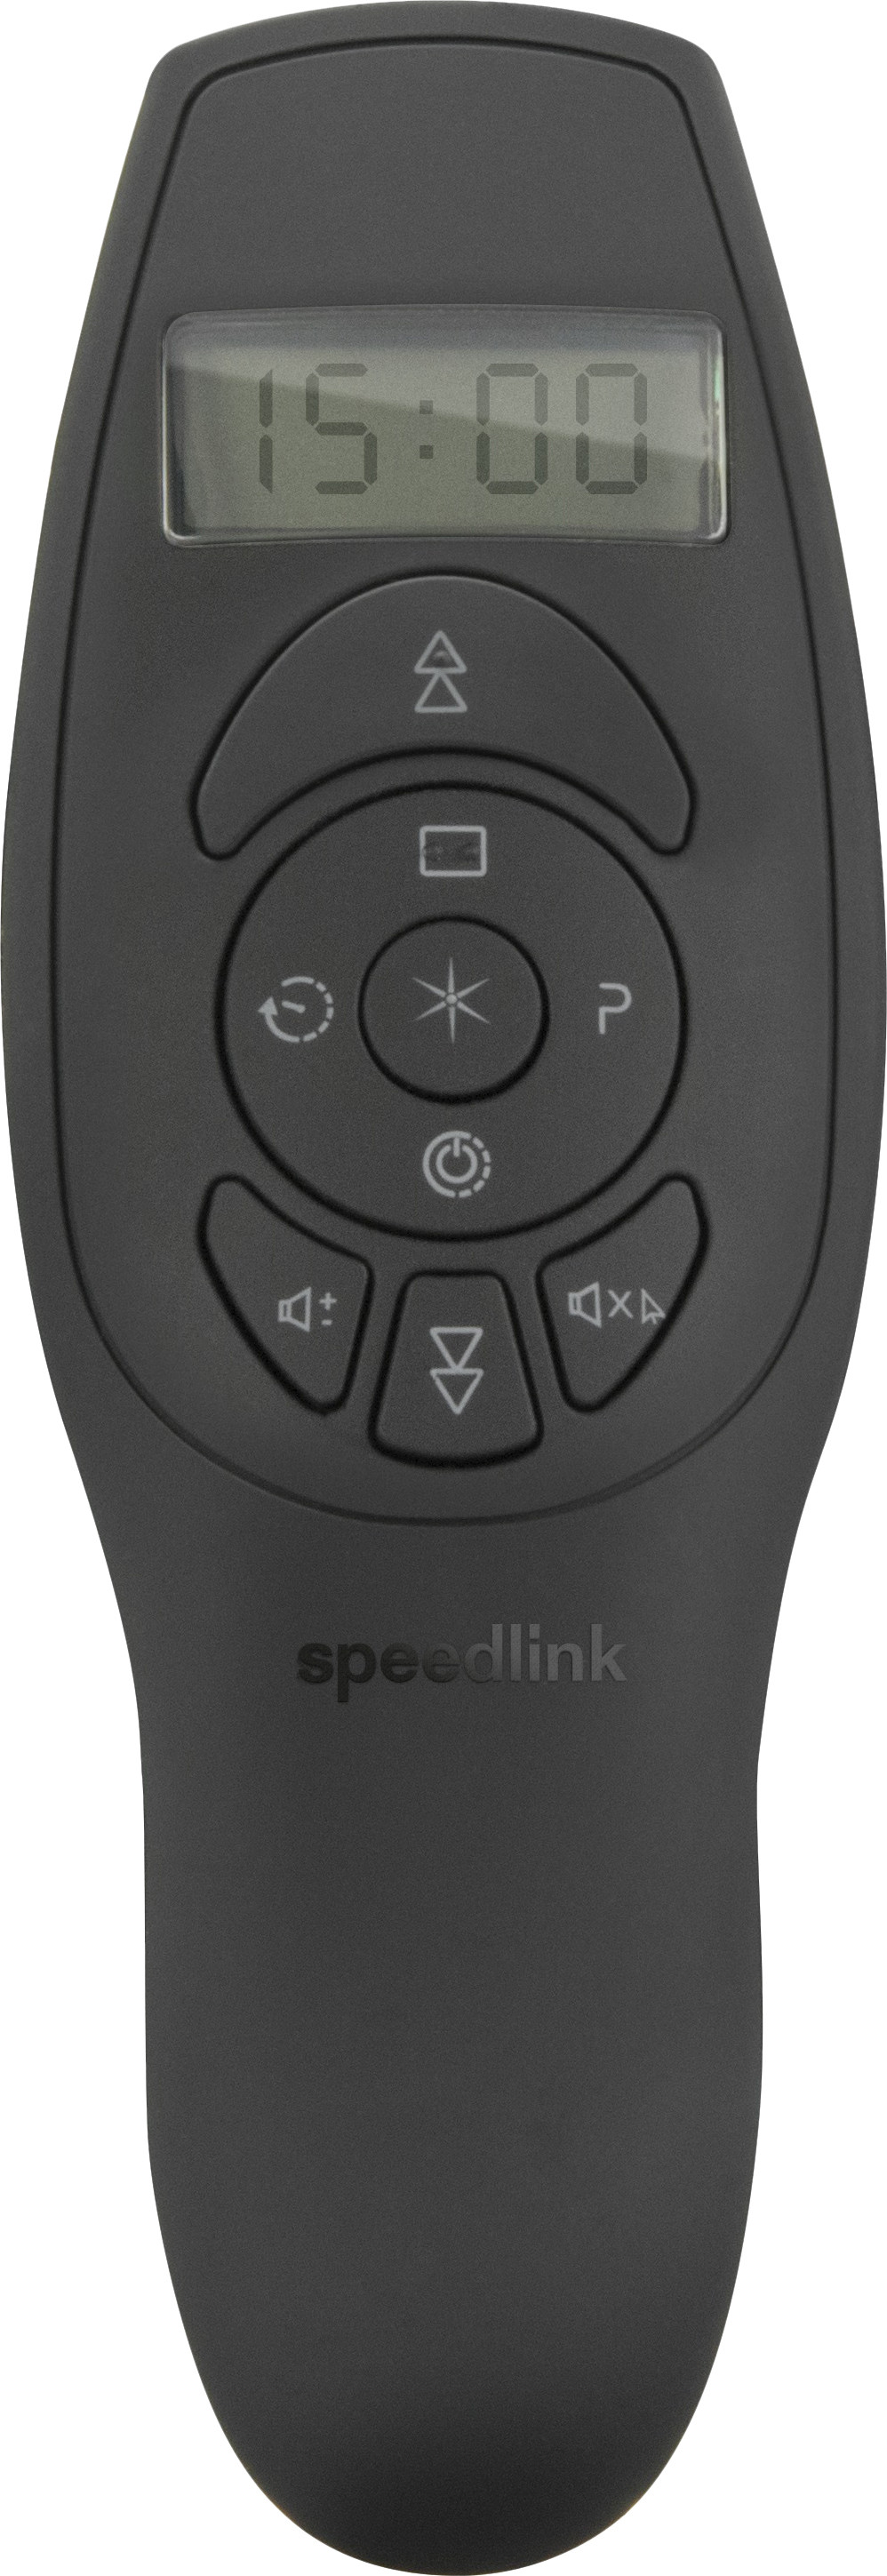 Speedlink esitluspult Acute Vibe (SL-600..